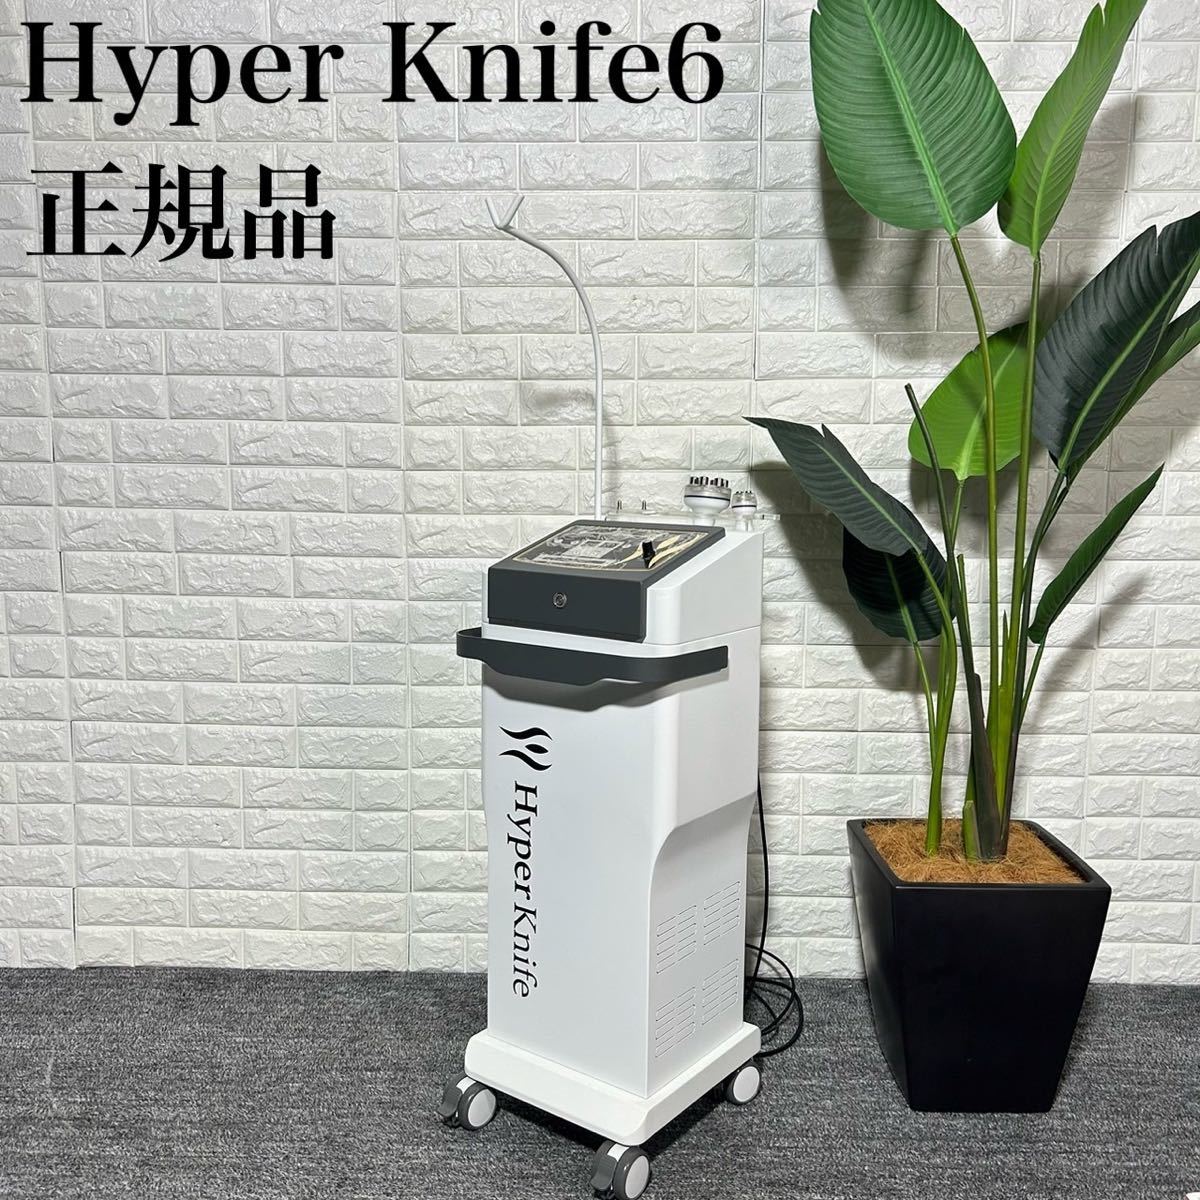 Hyper Knife6 正規品 ハイパーナイフ6 ワム ハイパーナイフ k0626